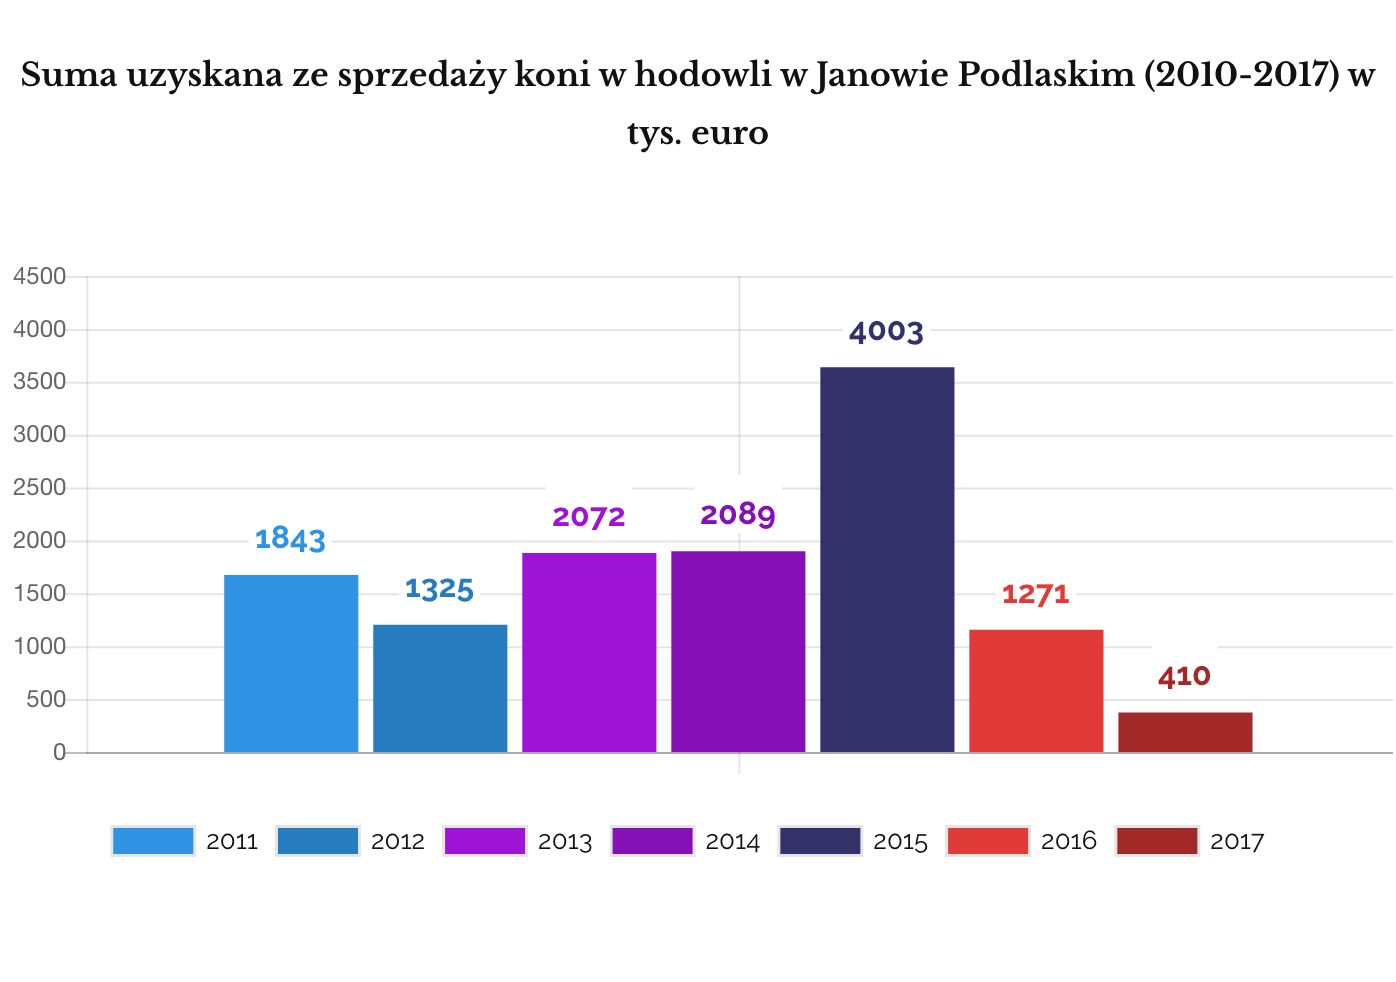 Suma uzyskana ze sprzedaży koni z hodowli w Janowie Podlaskim (2011-2017)